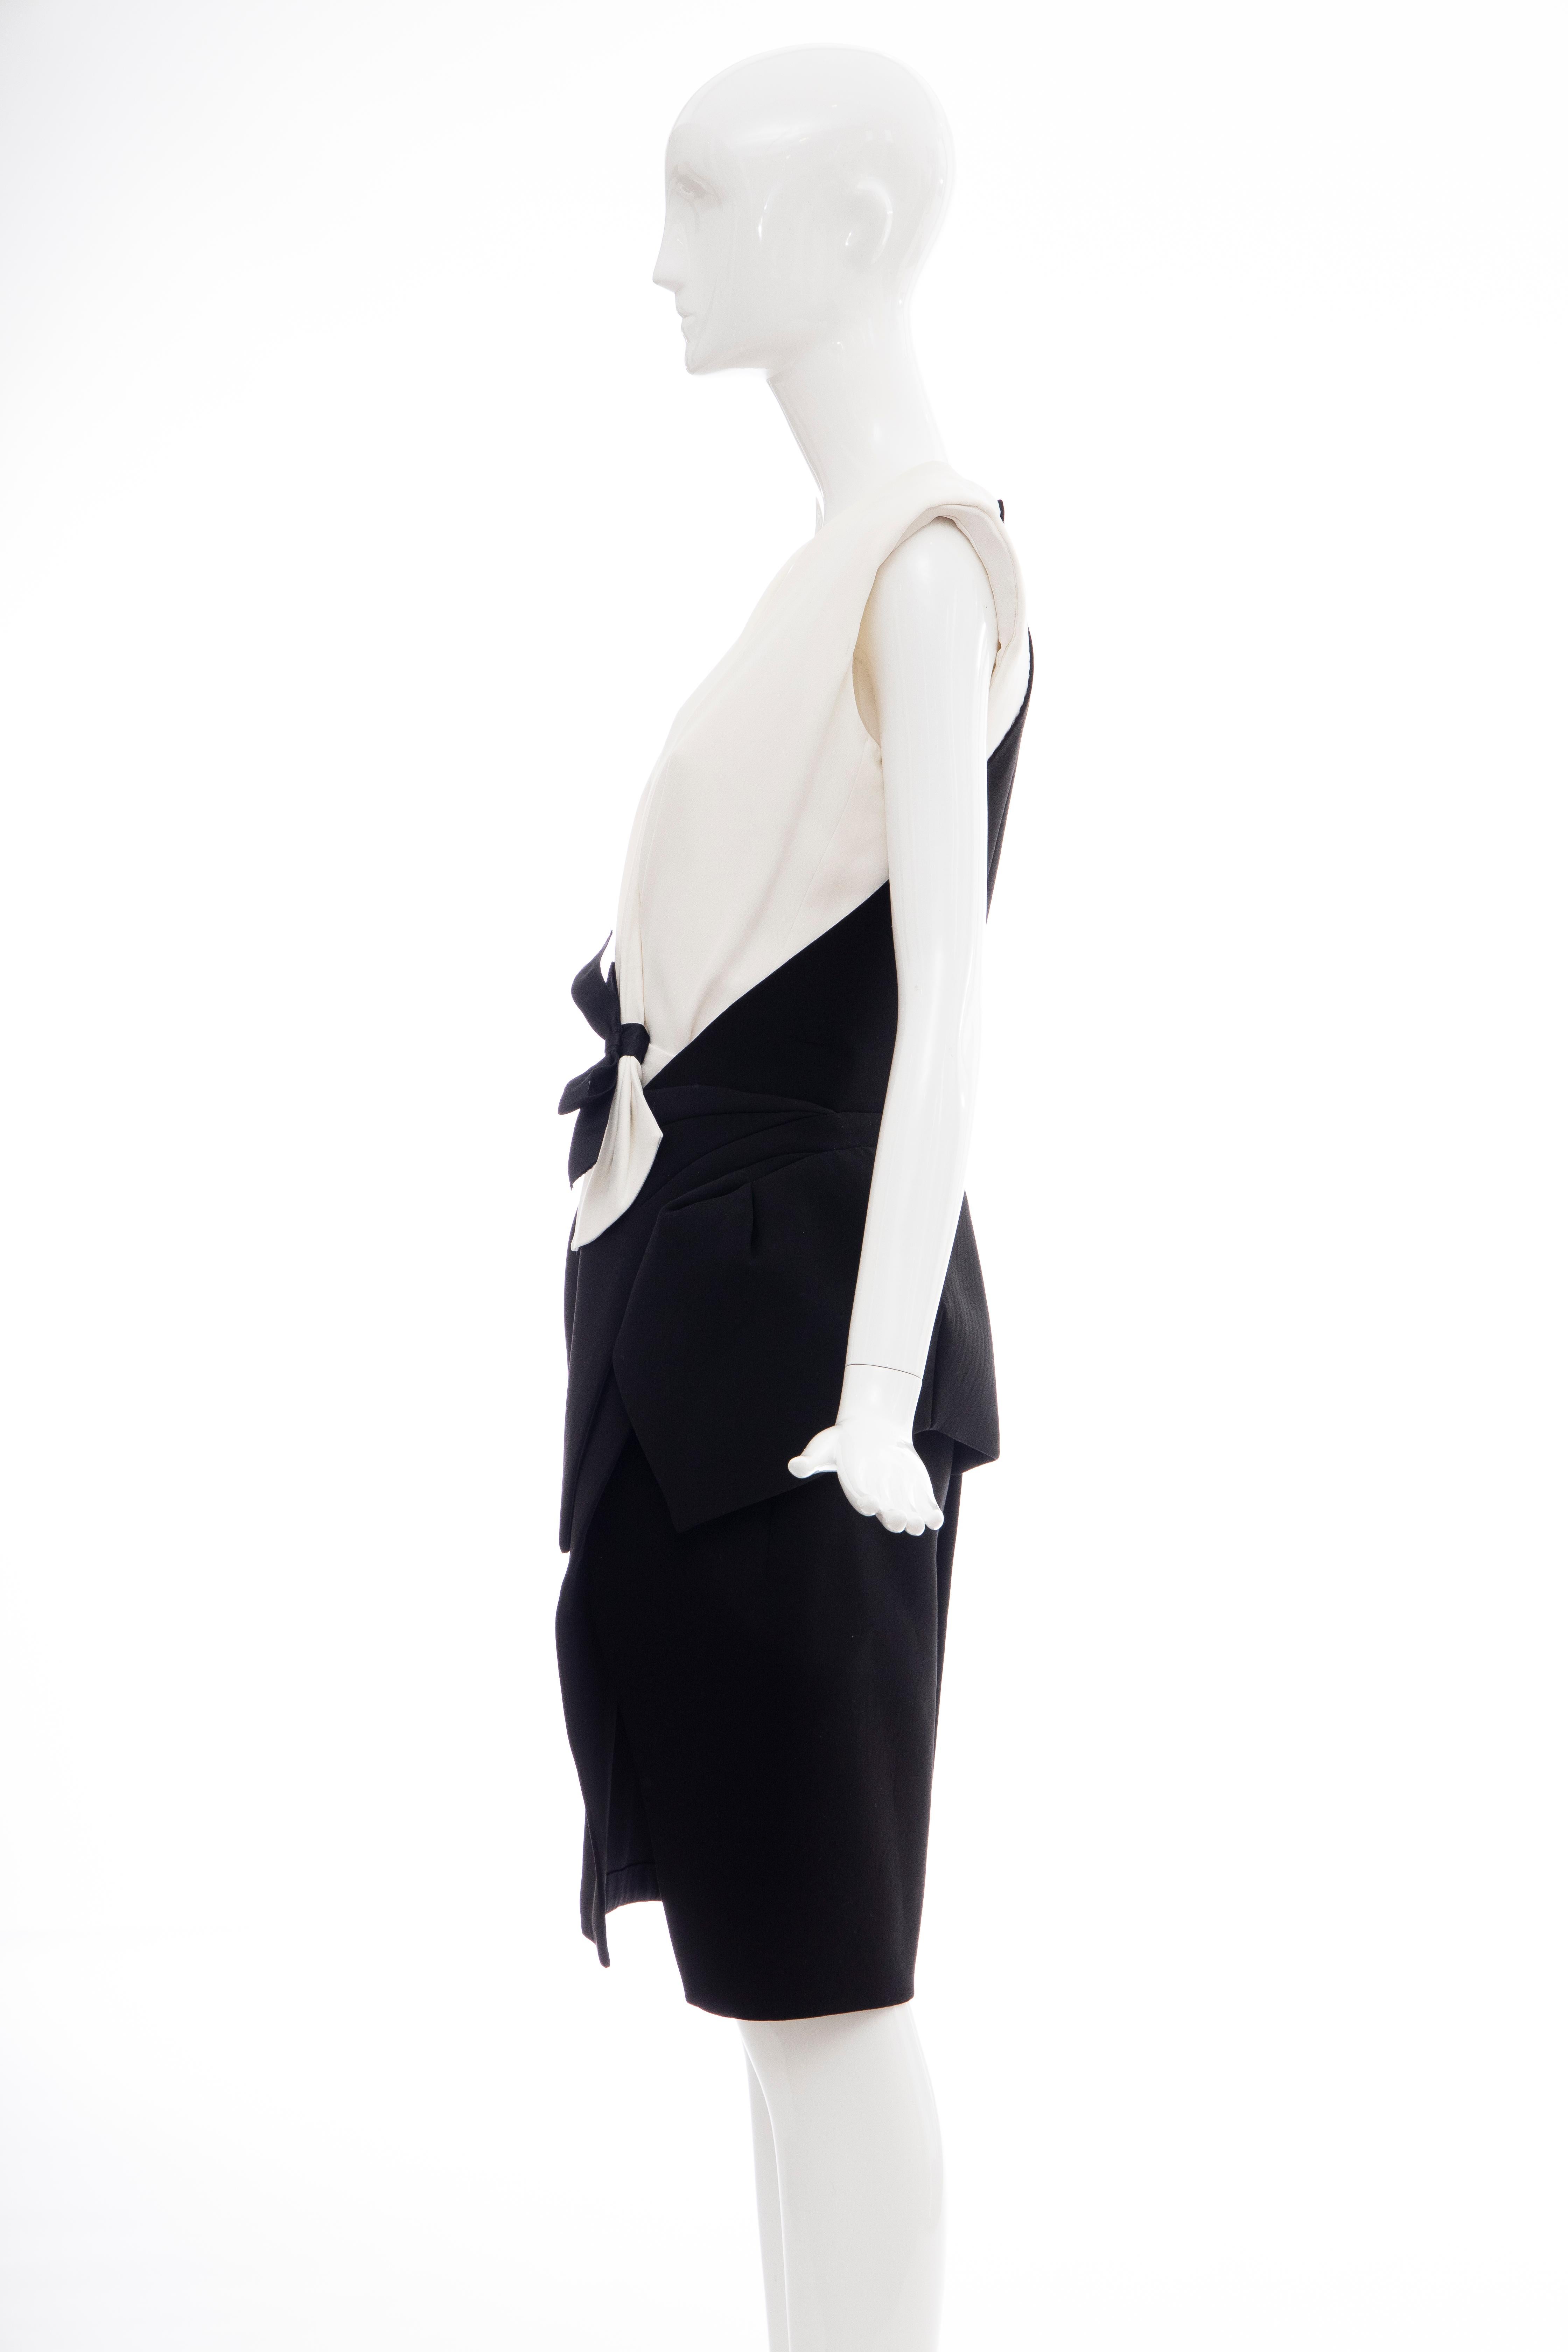 Nicolas Ghesquière for Balenciaga Runway Structured Dress, Fall 2008 4